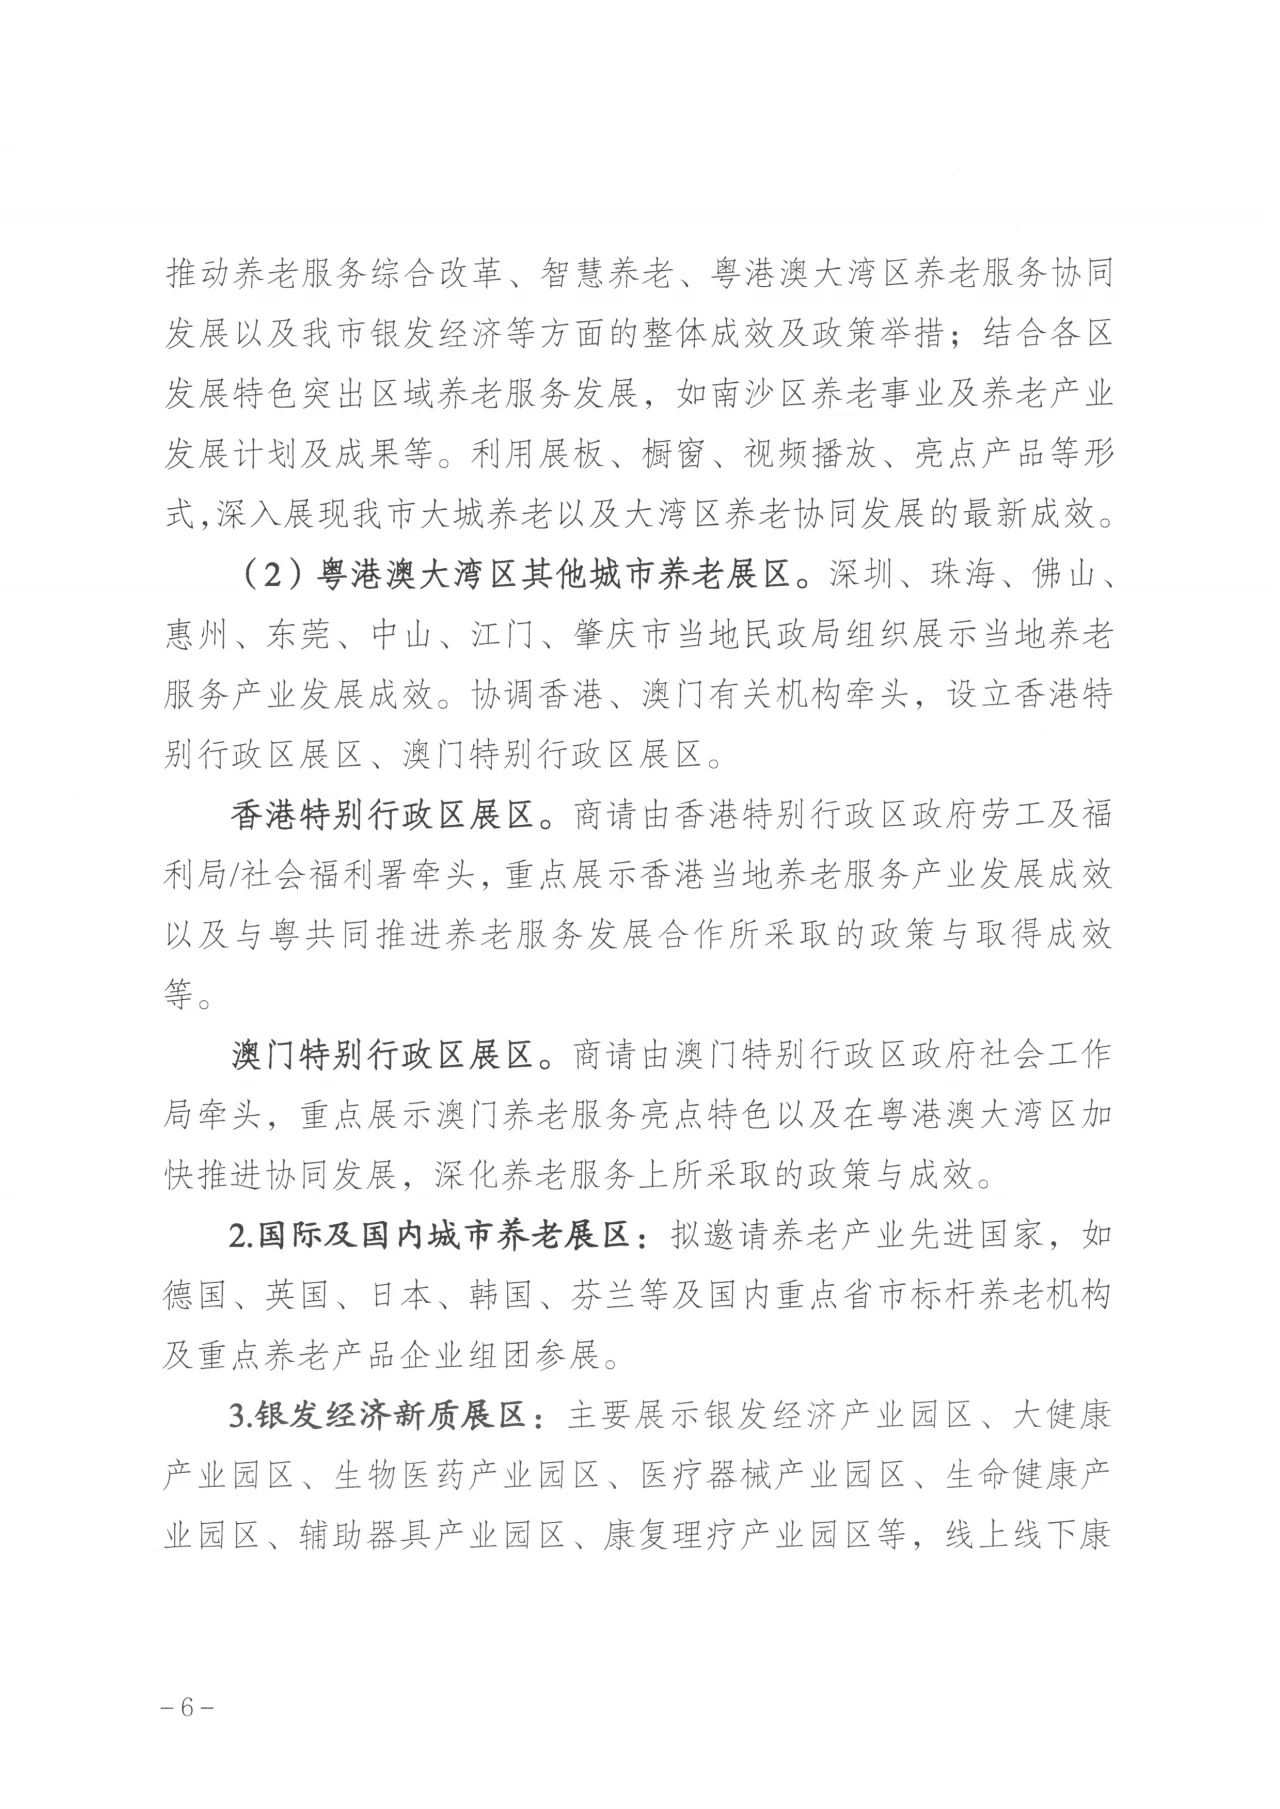 通知  广州市民政局关于邀请组织参加第八届广州老博会的函6.jpg